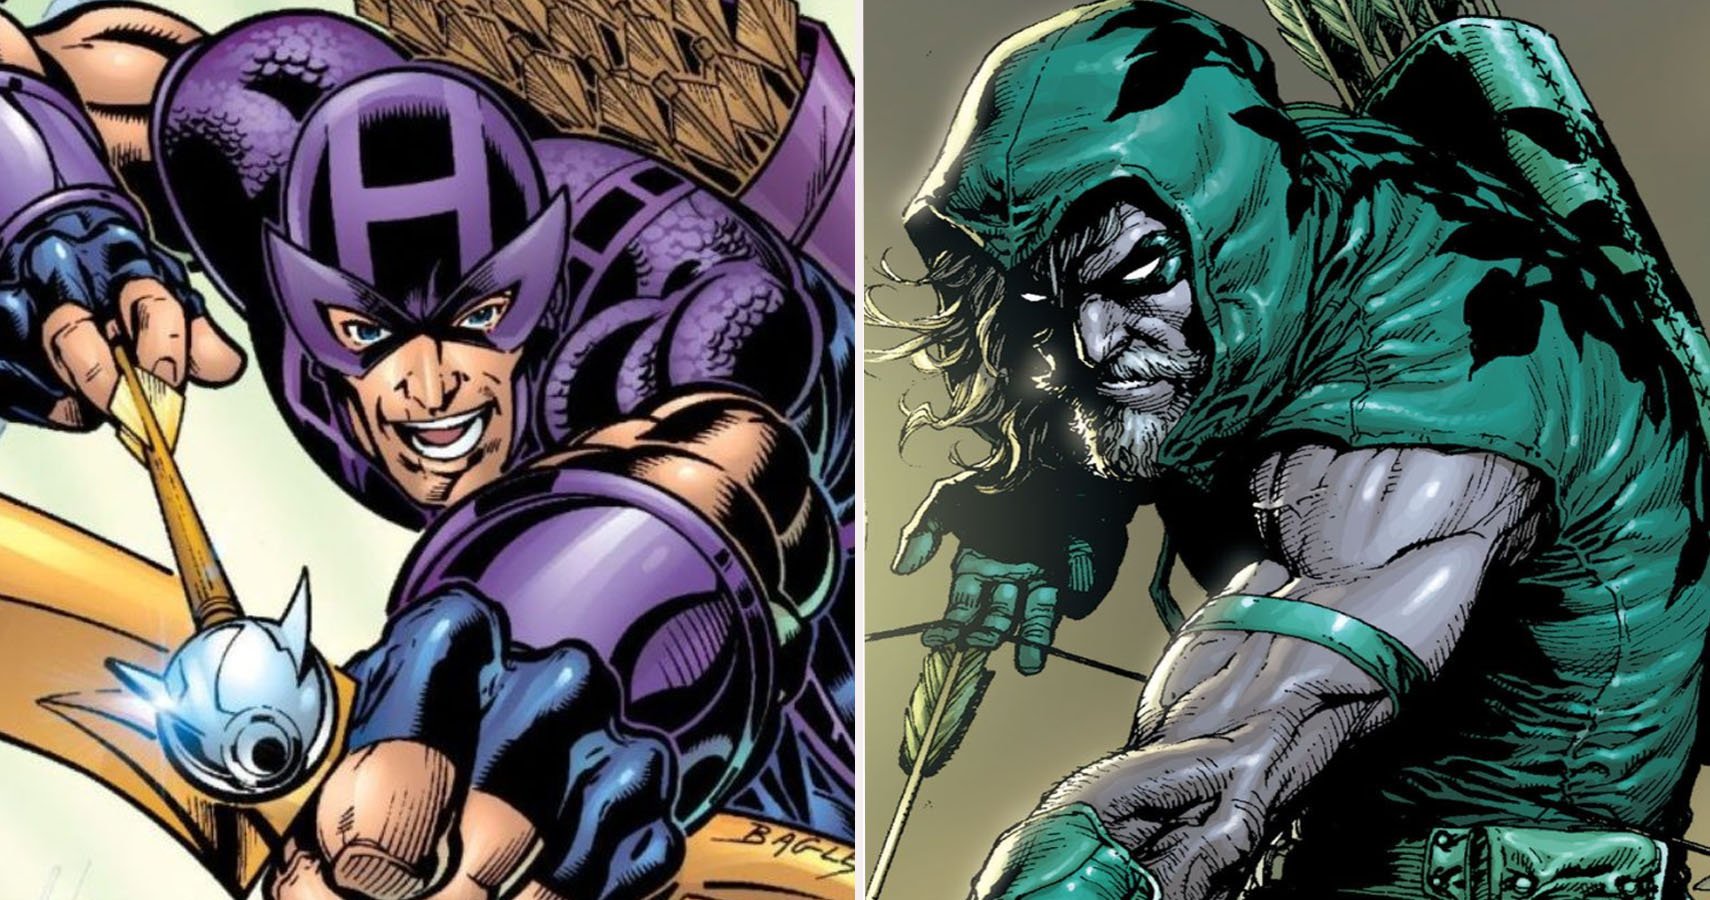 Hawkeye contra Green Arrow: ¿Quién es realmente el mejor tirador?